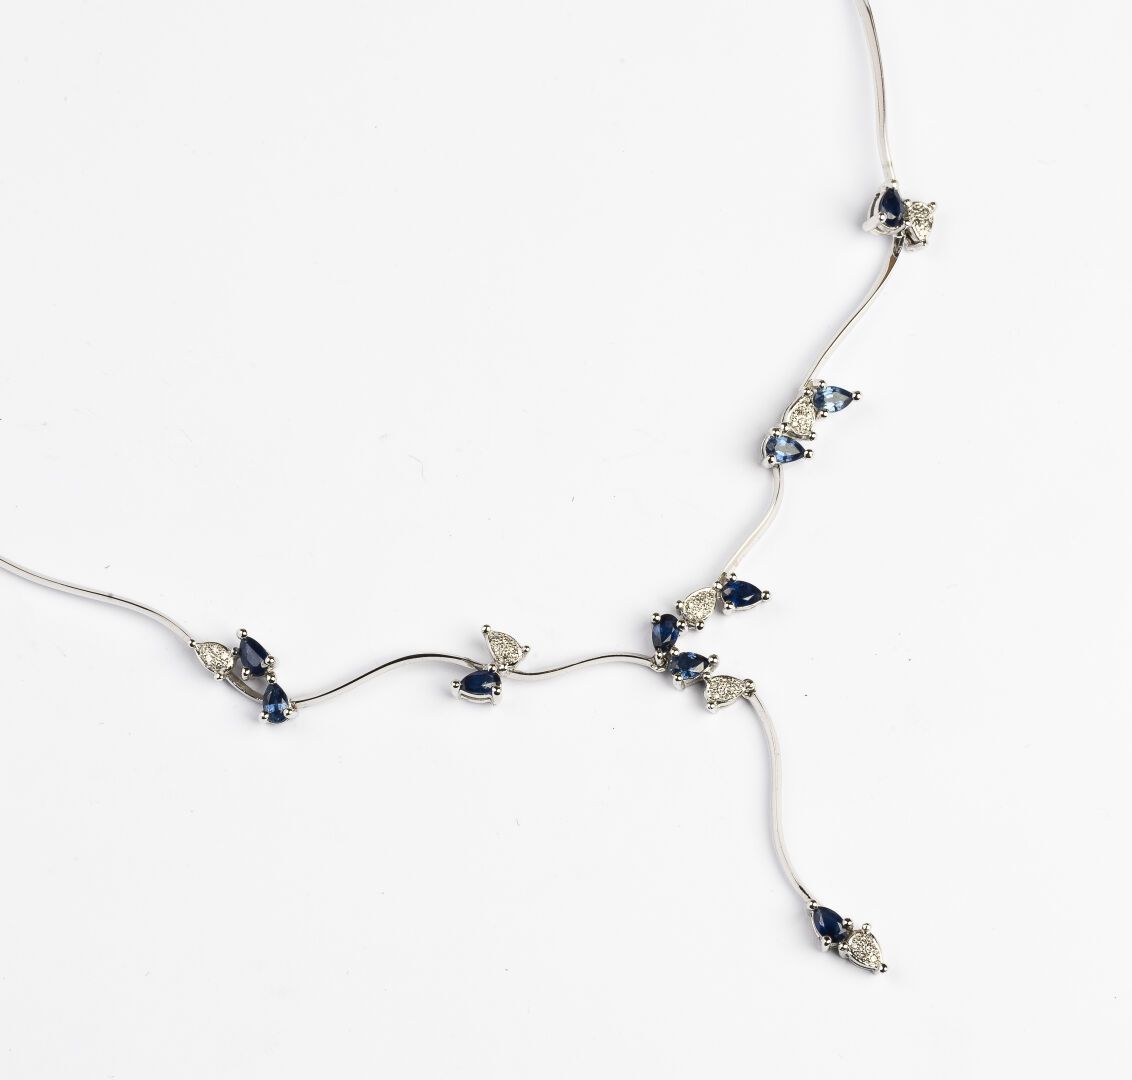 Null 帷幔项链

白金材质，750°/°。

镶有梨形切割蓝宝石和钻石的风格化叶子图案

毛重 : 19,45 g